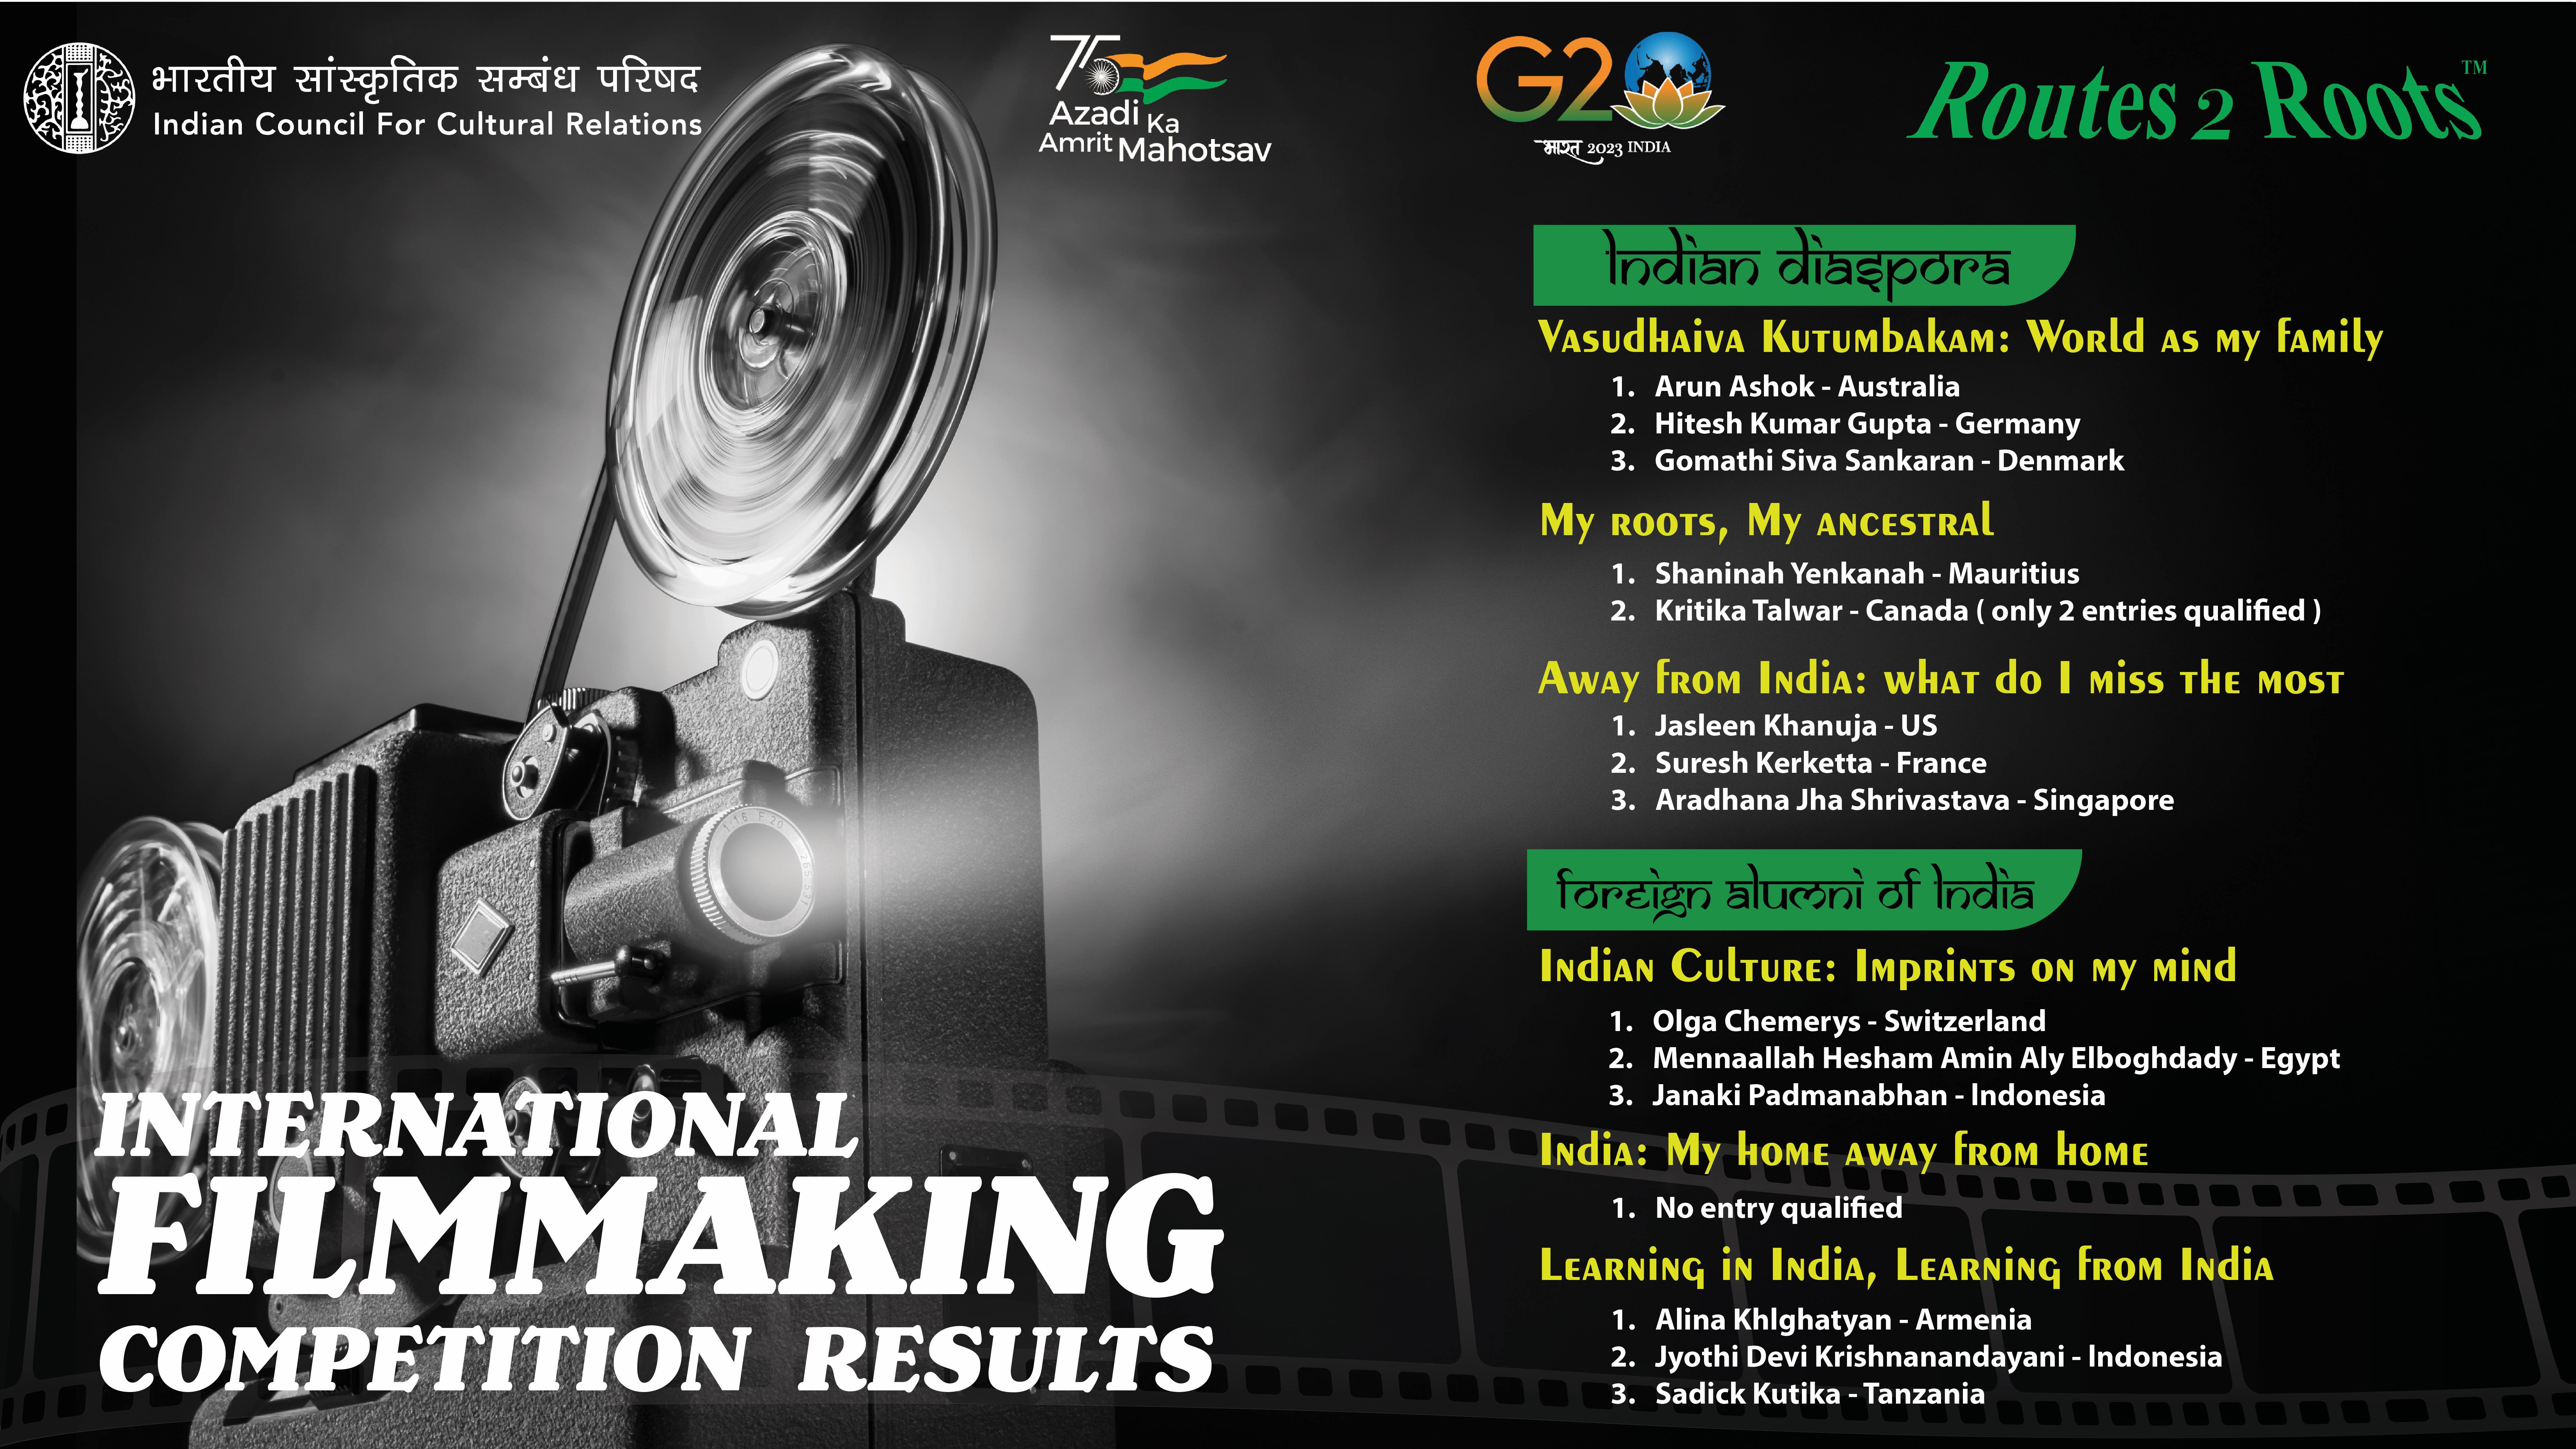 09 मई, 2022 से 1 जनवरी, 2023 तक विभिन्न आयु वर्ग के लिए अलग-अलग थीम के तहत आयोजित रूट्स2रूट्स के सहयोग से भारतीय डायस्पोरा और विदेशी पूर्व छात्रों के लिए अंतर्राष्ट्रीय फिल्म निर्माण प्रतियोगिता। माननीय अध्यक्ष, आईसीसीआर पुरस्कार समारोह की शोभा बढ़ाएंगे